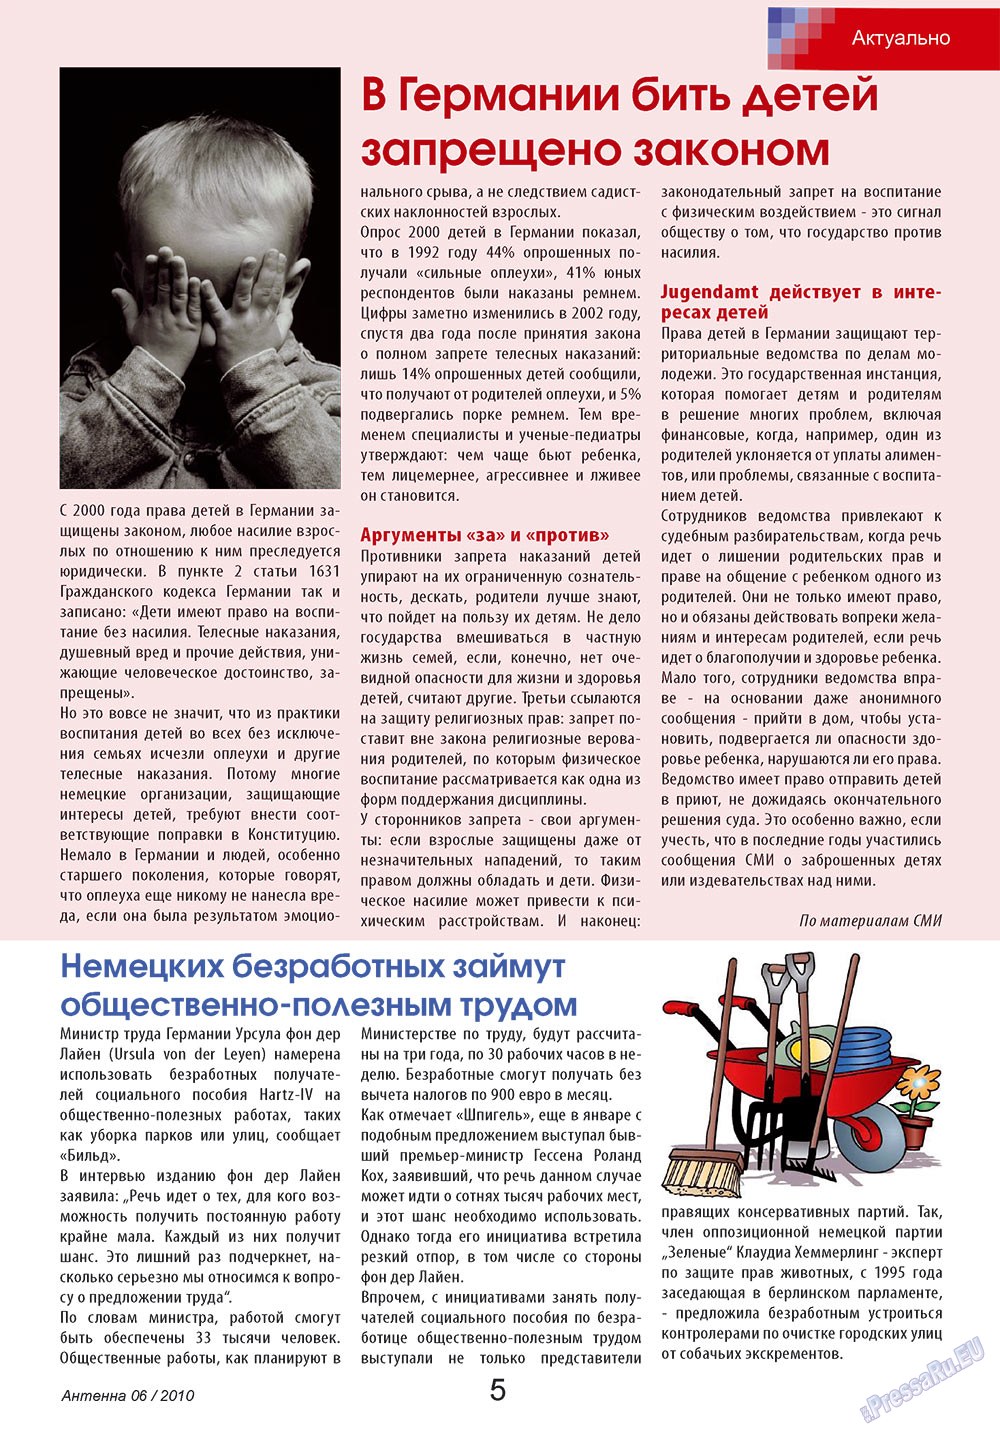 Антенна, журнал. 2010 №6 стр.5